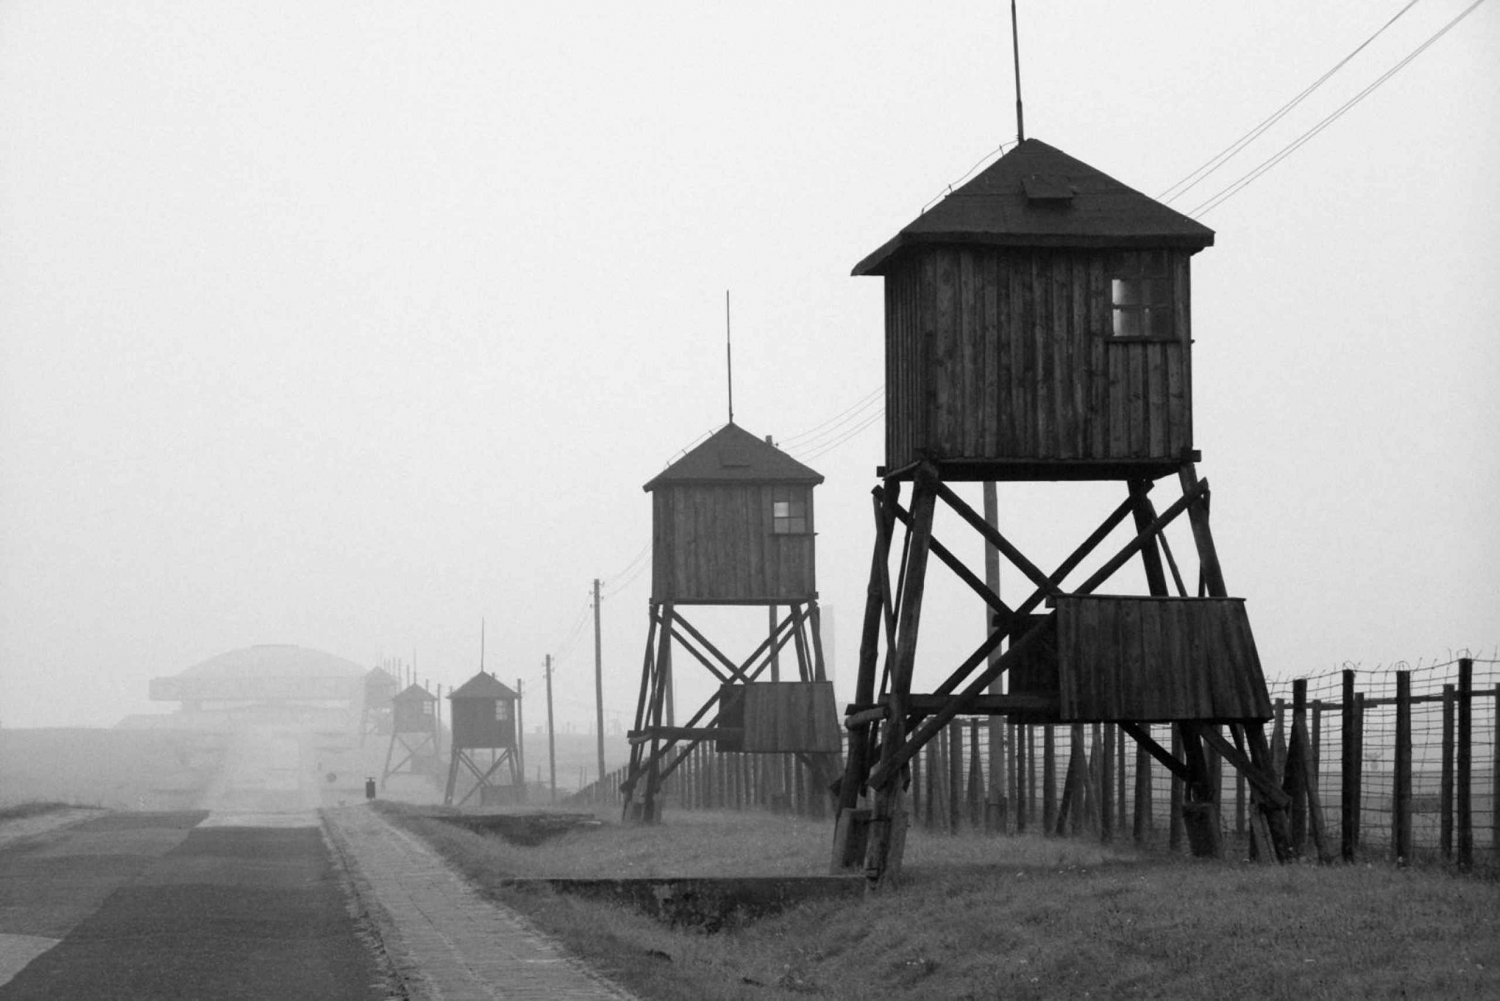 Warschau: Majdanek concentratiekamp, Lublin dagtrip met de auto